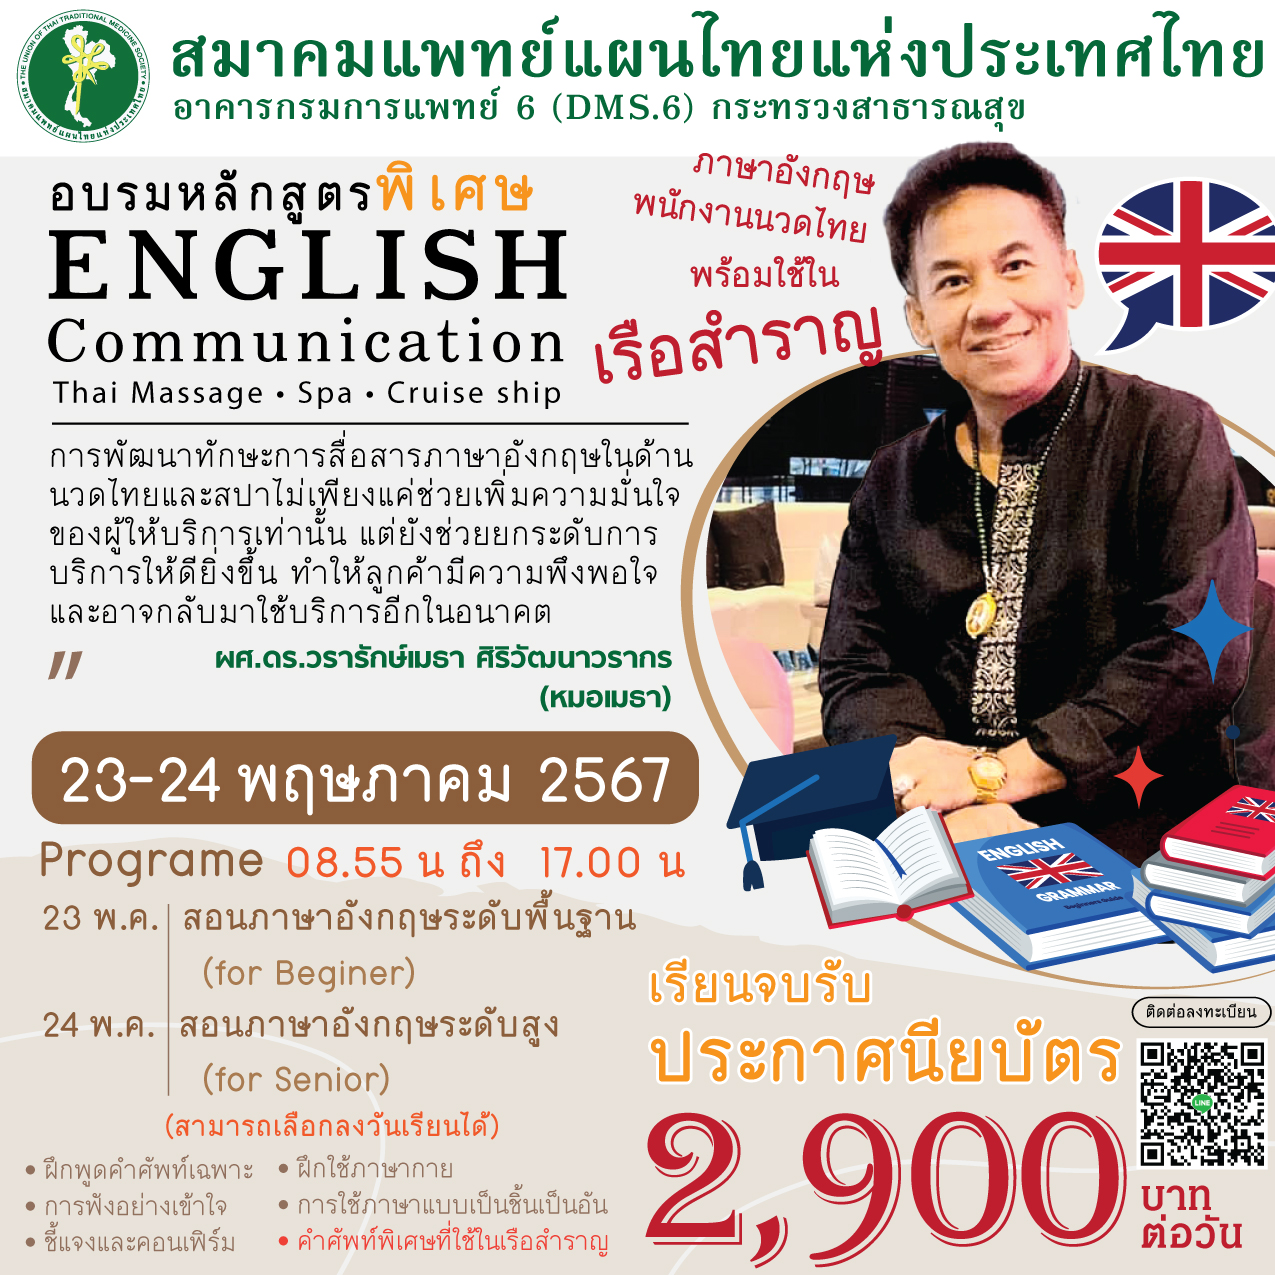 อบรมเทคนิคการสื่อสารภาษาอังกฤษในด้านนวดไทยและสปา